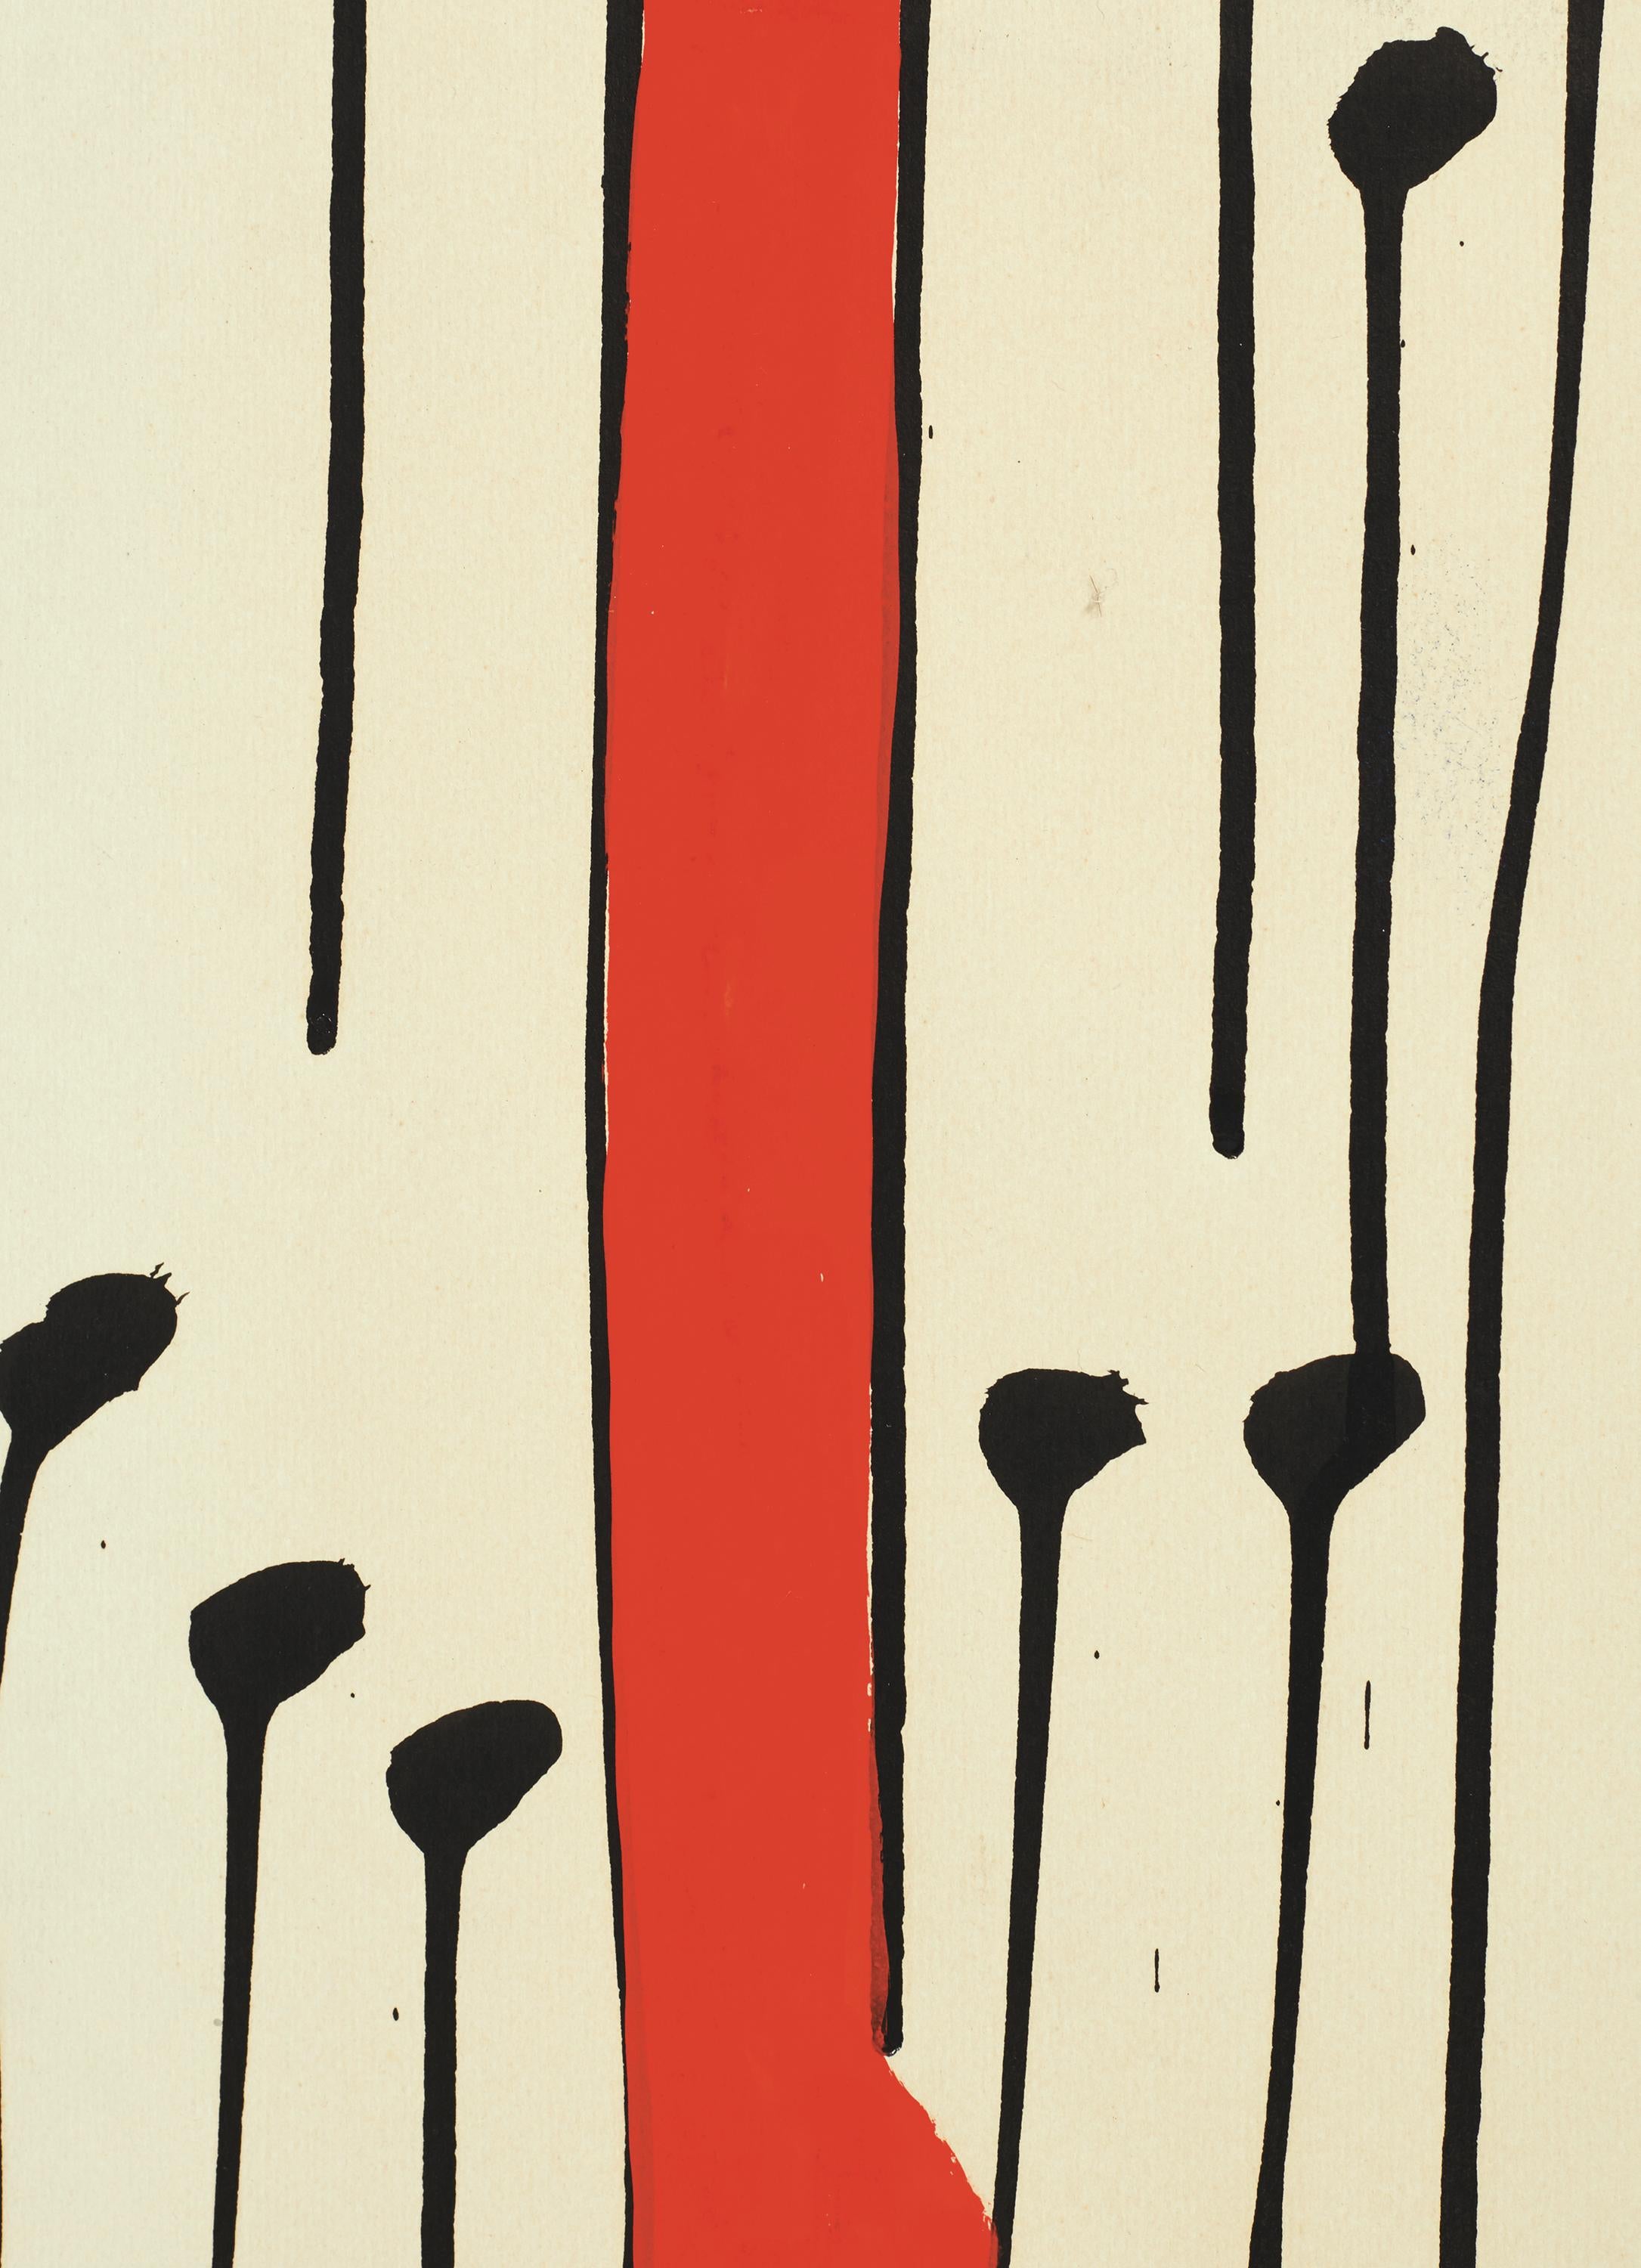 The Forest - Post-War Art by Alexander Calder